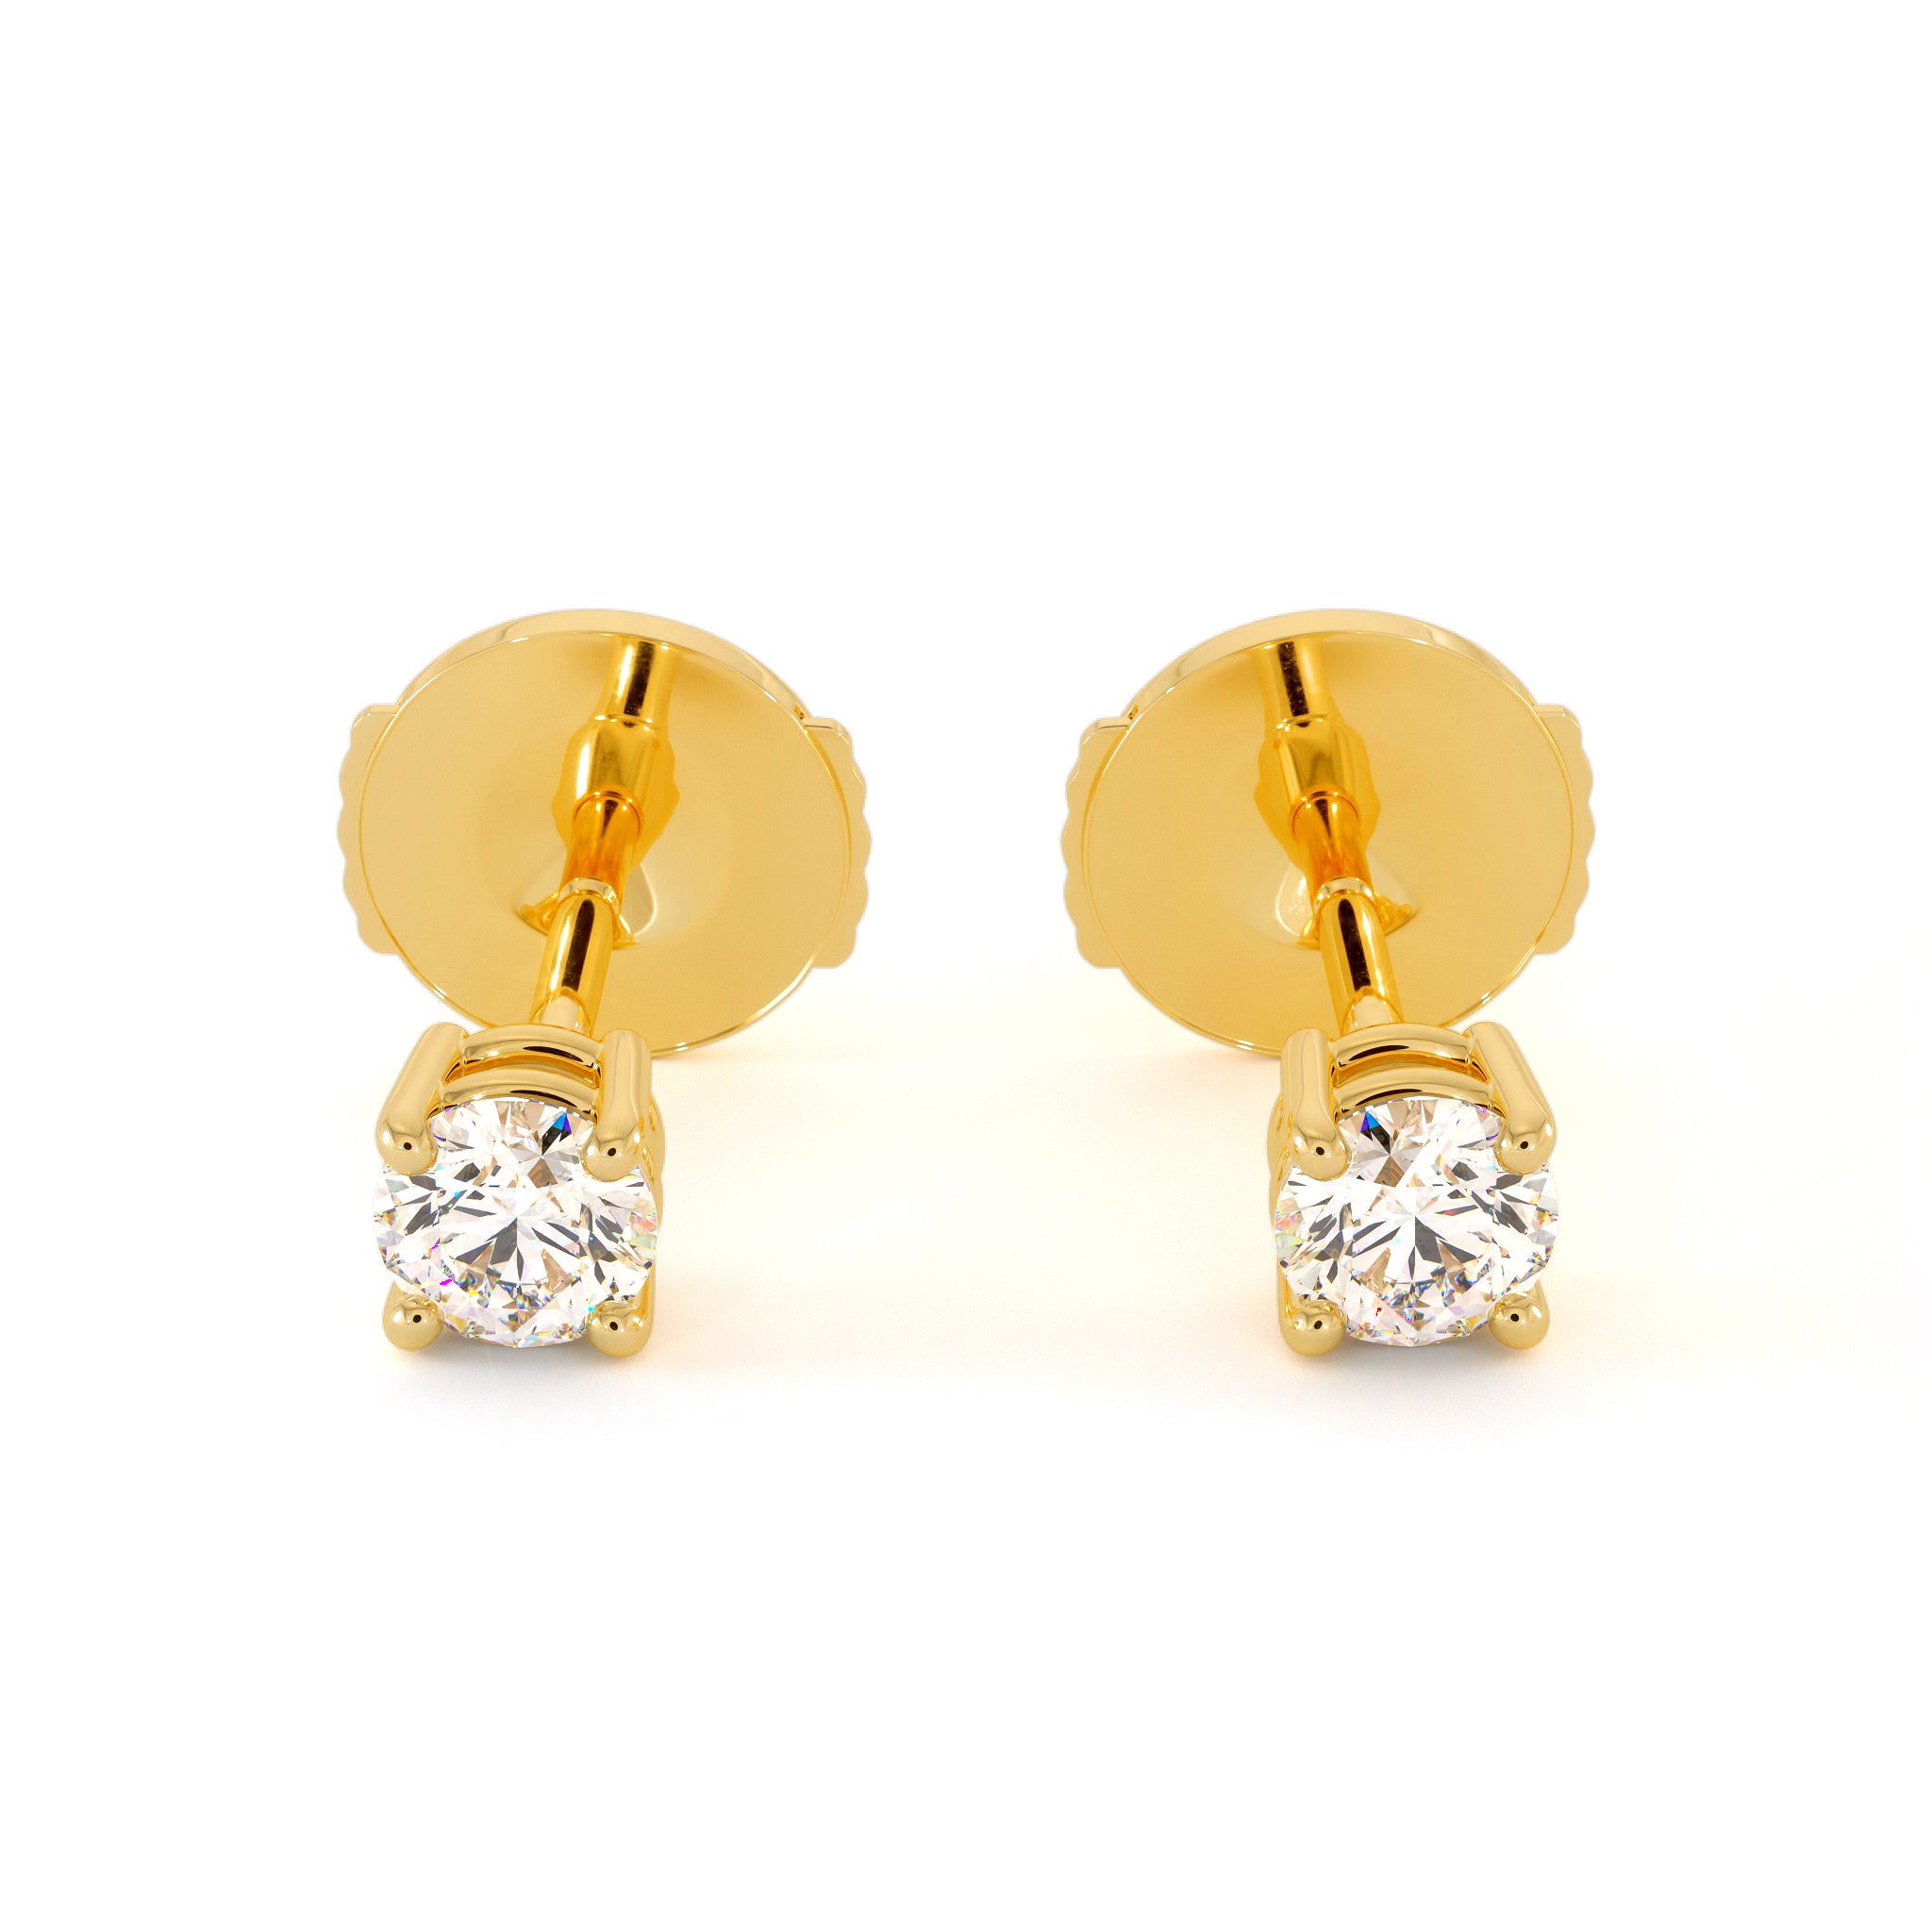 Packshot des boucles d'oreilles en diamants et or jaune, modèle Priya de forme ronde